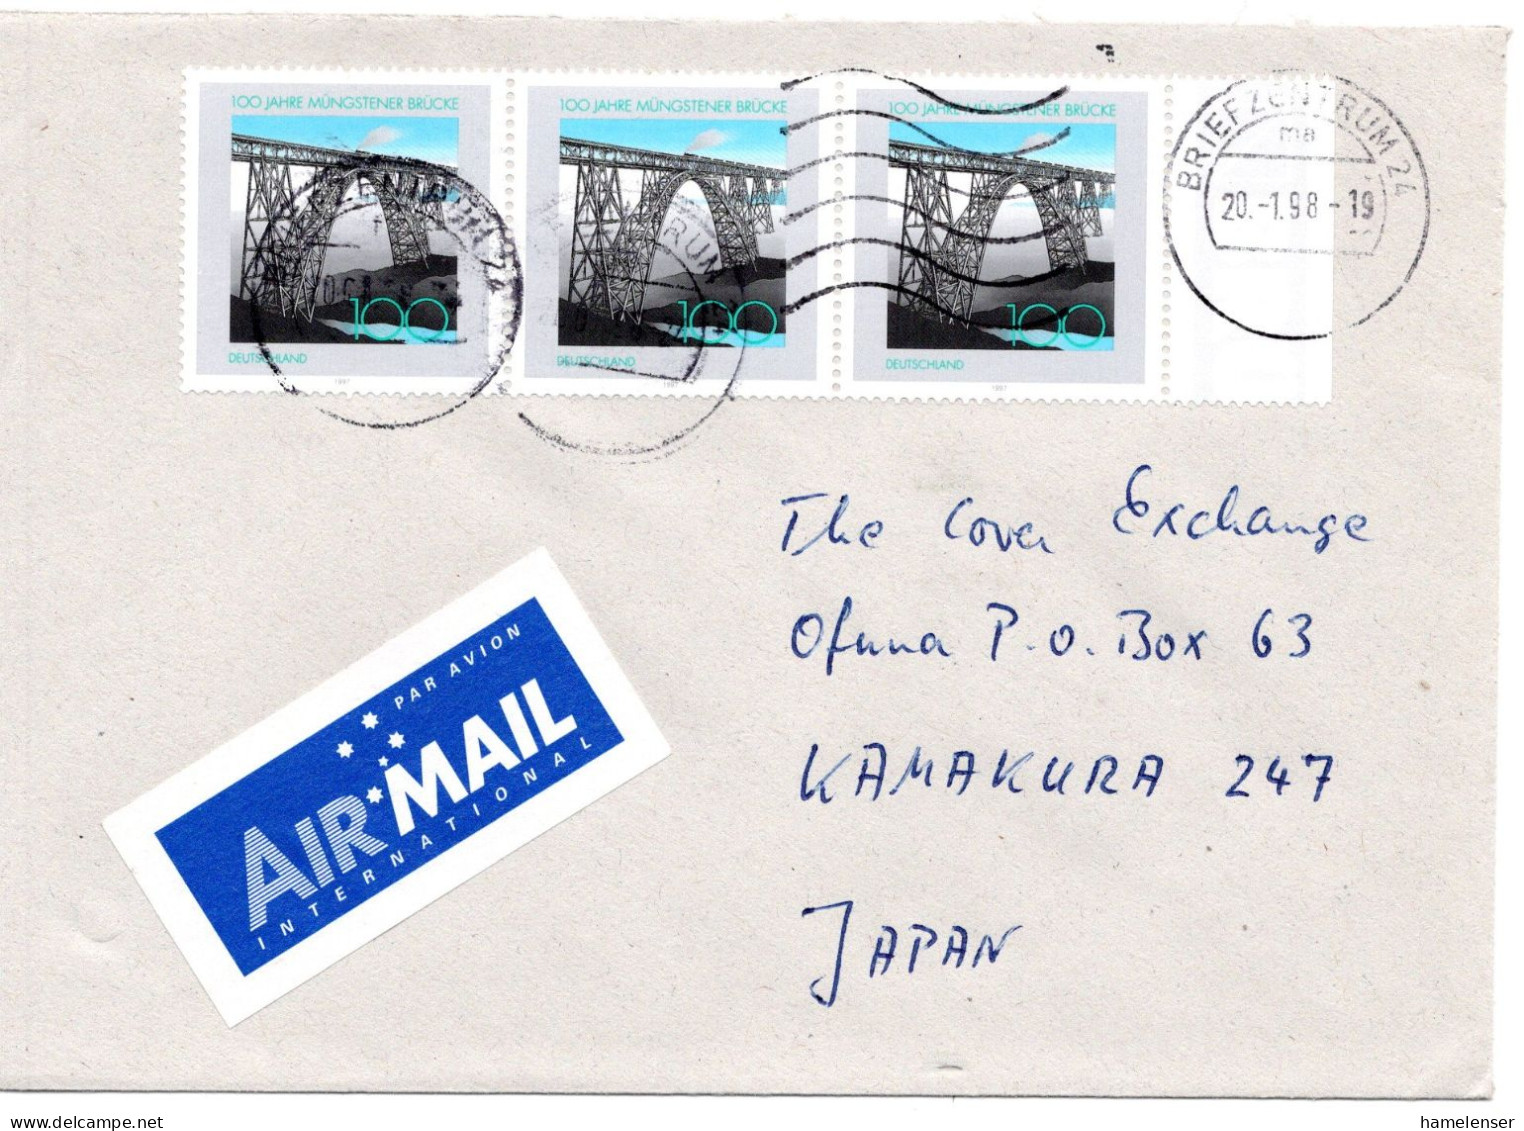 66278 - Bund - 1998 - 3@100Pfg Muengstener Bruecke A LpBf BRIEFZENTRUM 24 -> Japan - Briefe U. Dokumente